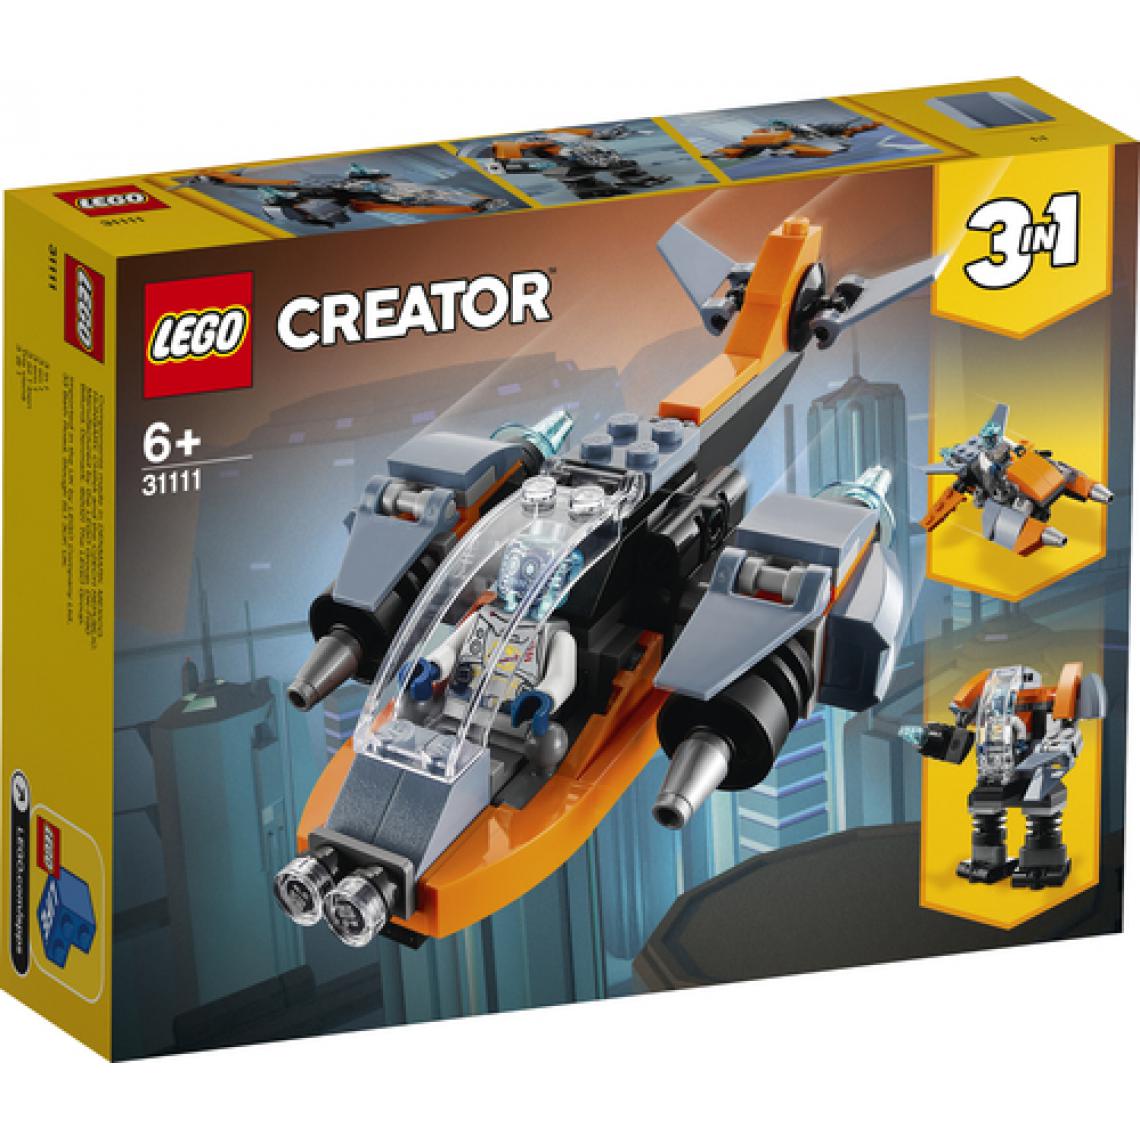 Lego - LEGO Creator 3-en-1 31111 Le cyber drone, Jeu de construction 3-en-1, incluant un cyber drone, un cyber robot et un cyber scooter - Briques Lego